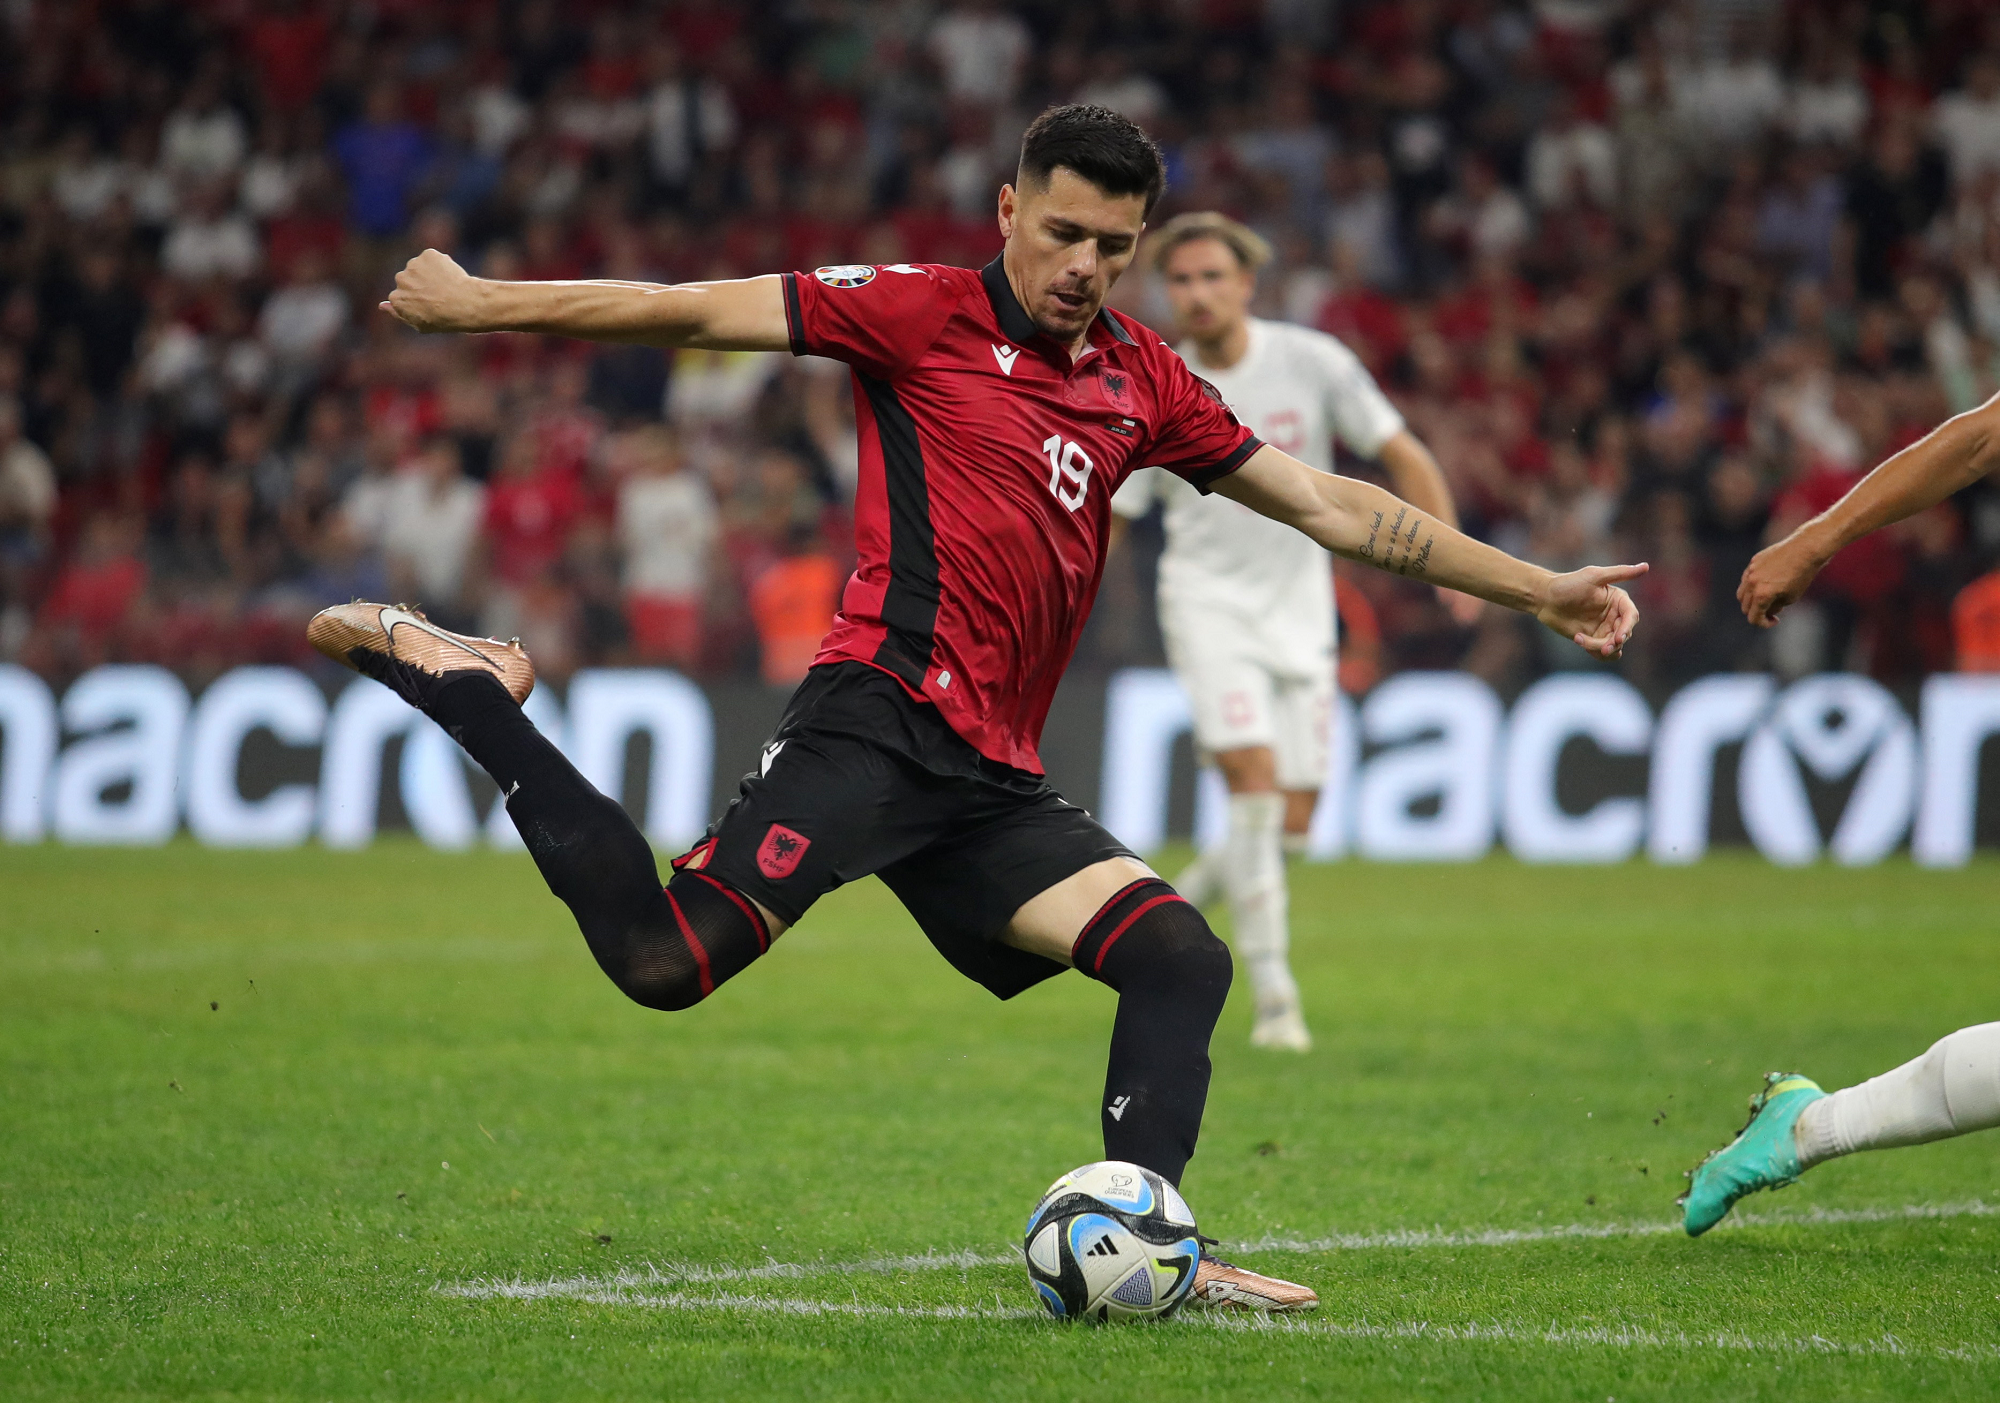 إيقاف لاعب ألبانيا داكو مباراتين لسوء السلوك